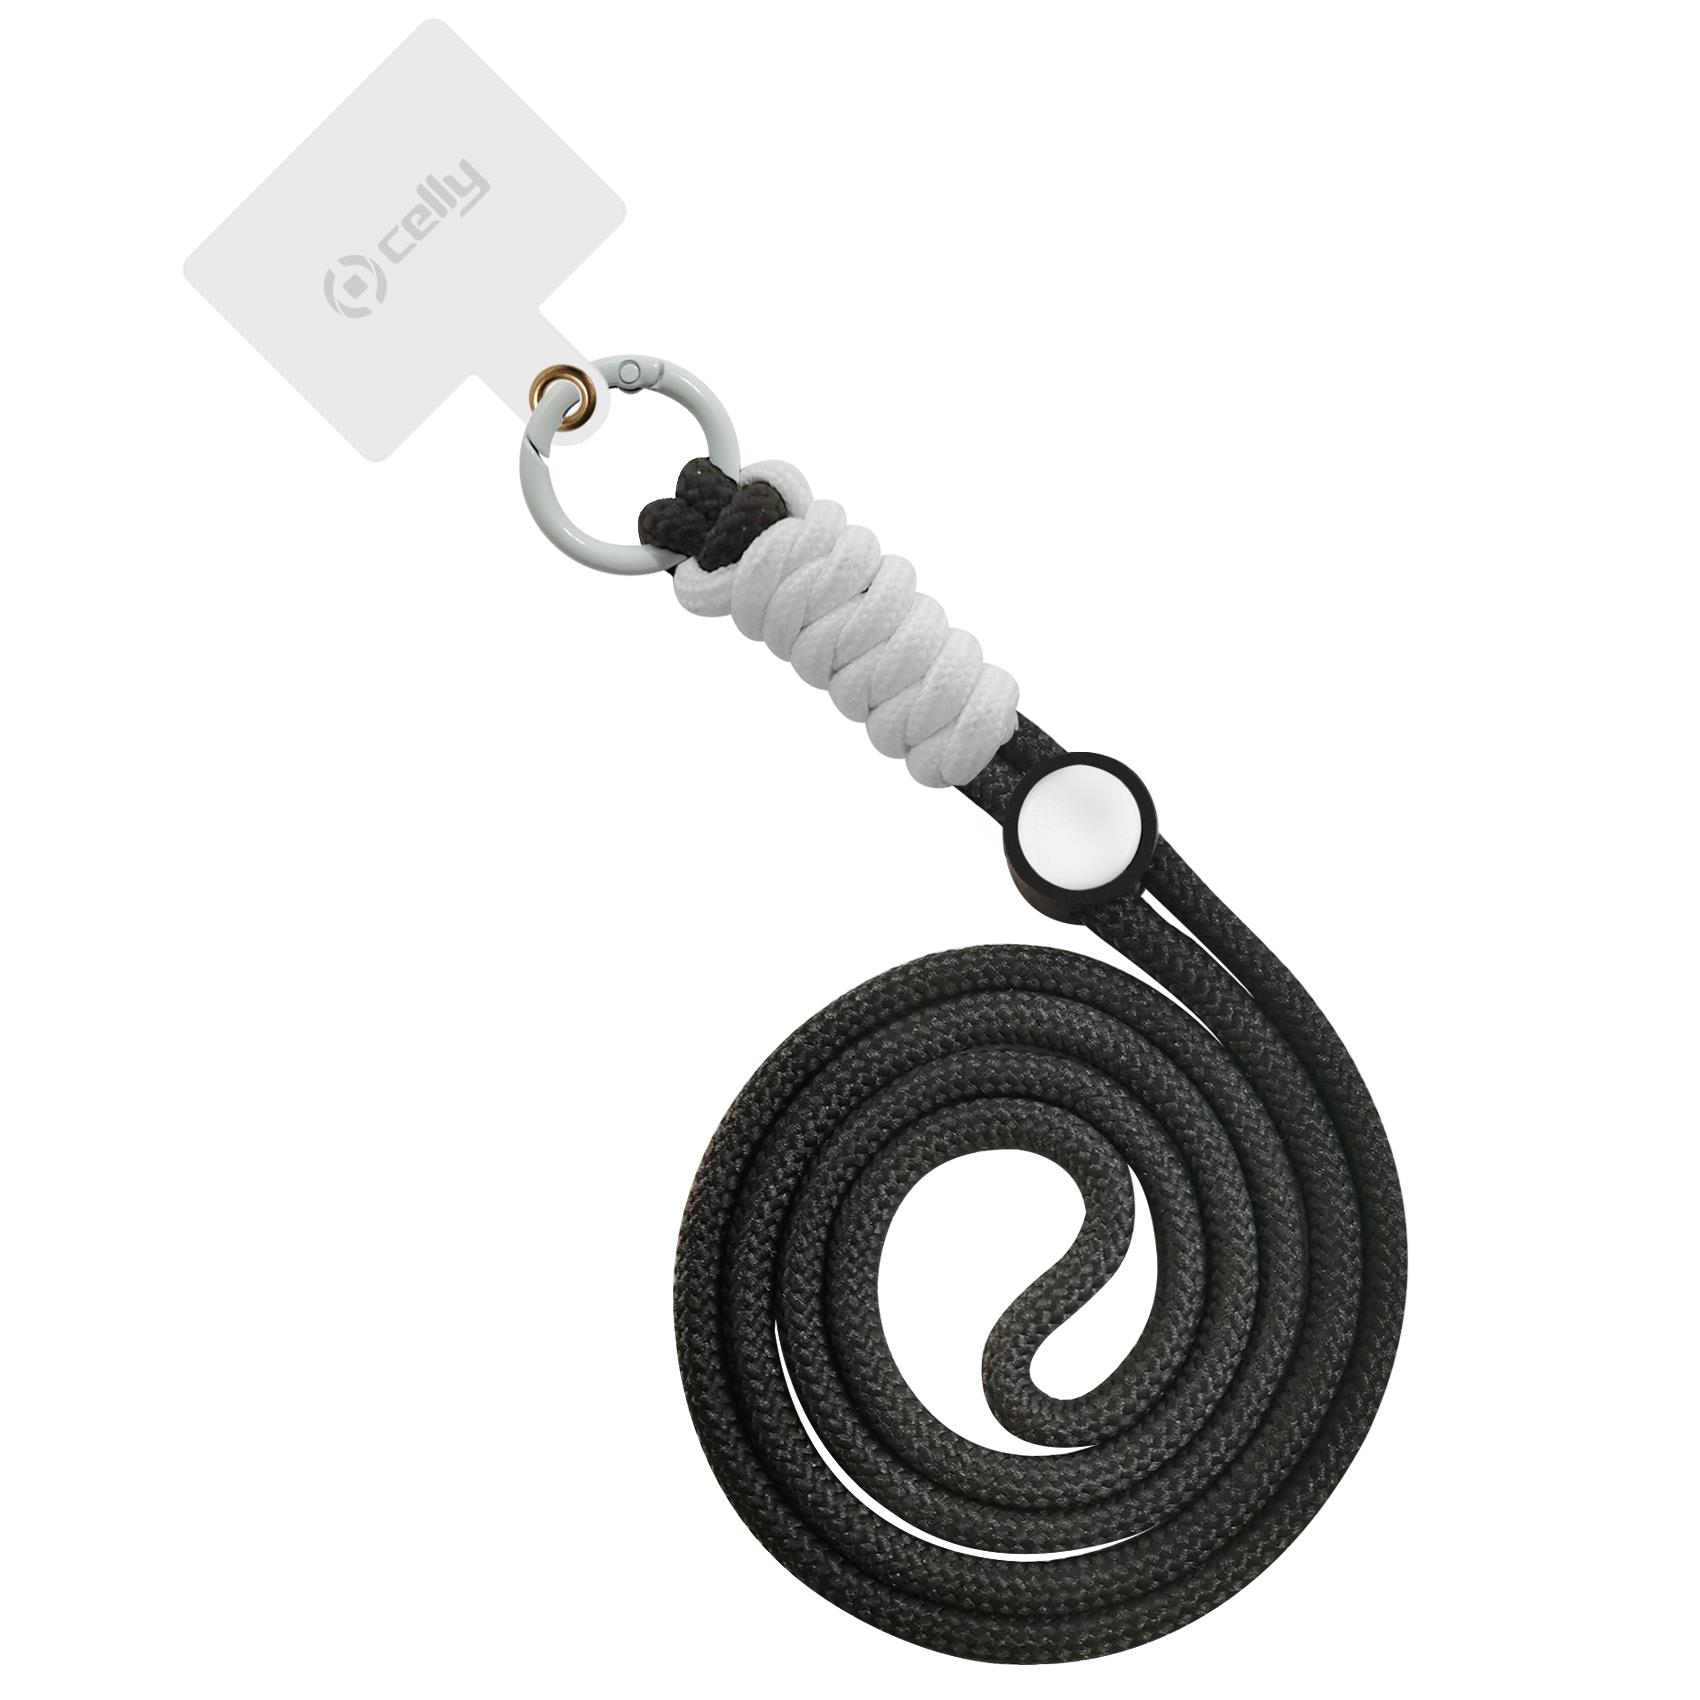 LACETNYL - Smartphone Neck Chain [SUMMER]